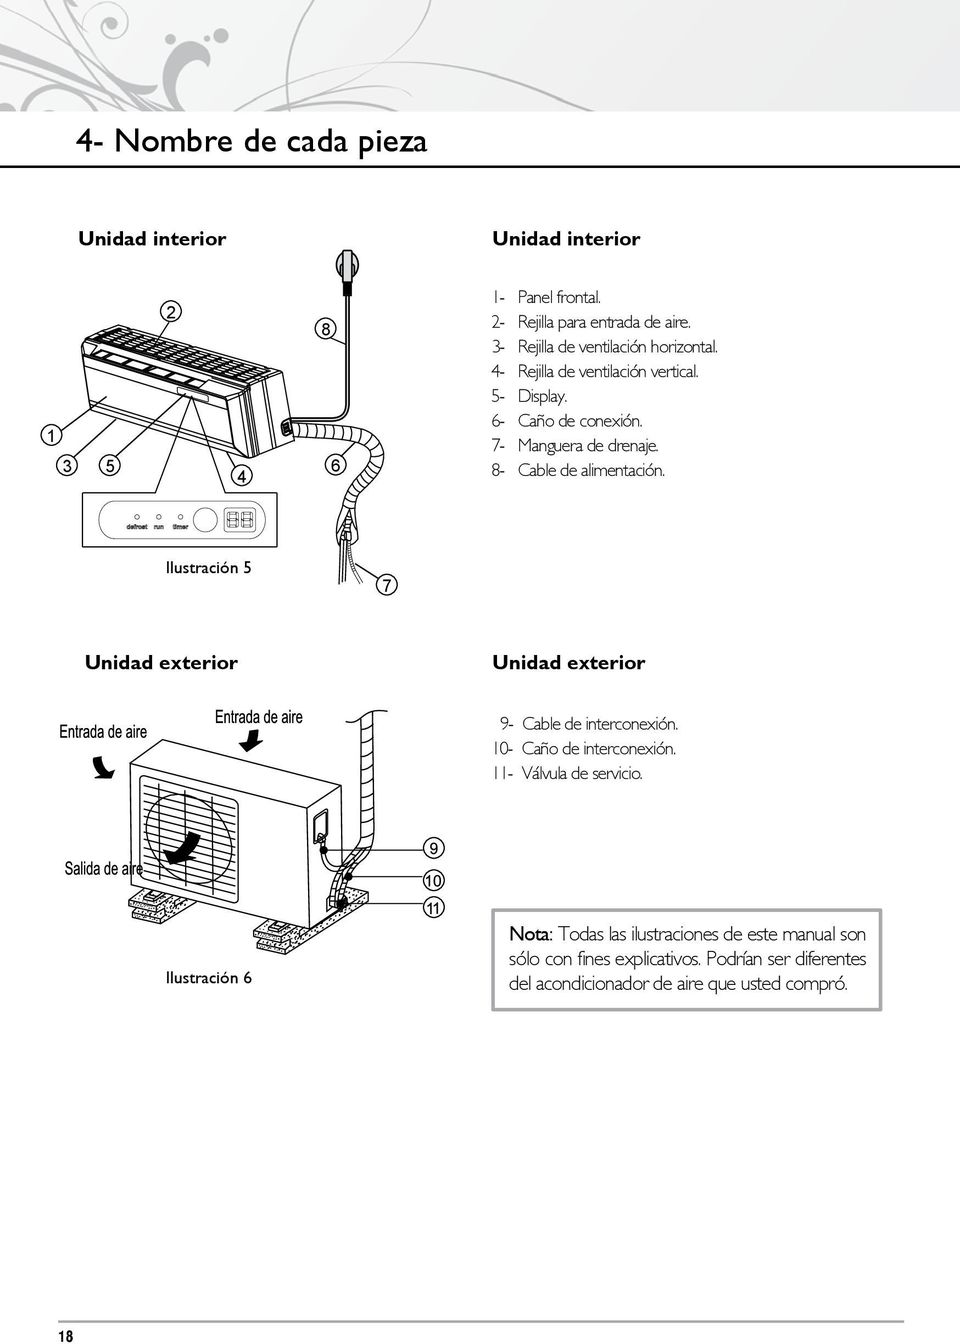 8- Cable de alimentación. Ilustración 5 7 Unidad exterior Unidad exterior 9- Cable de interconexión. 10- Caño de interconexión.